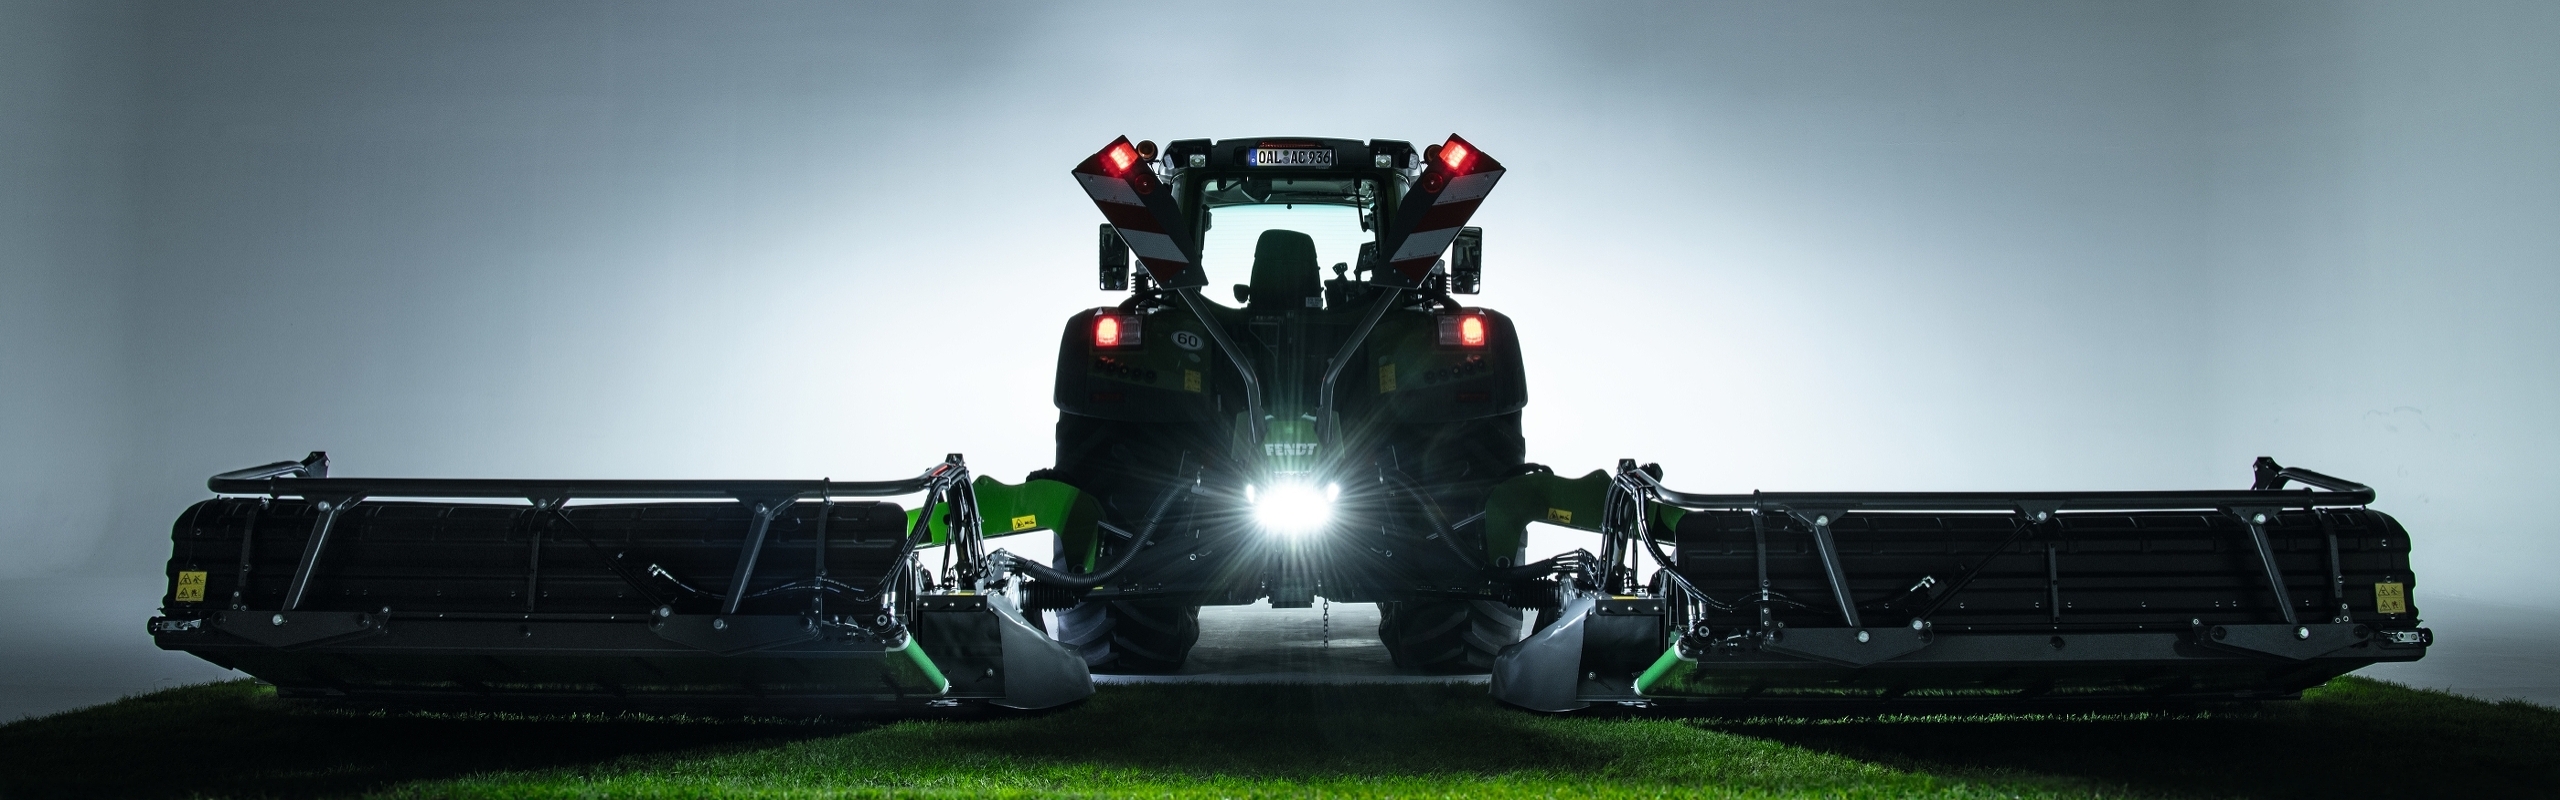 Fendt-traktori seisoo Fendt Slicer -lautasniittokoneella pellolla illan hämärtyessä.